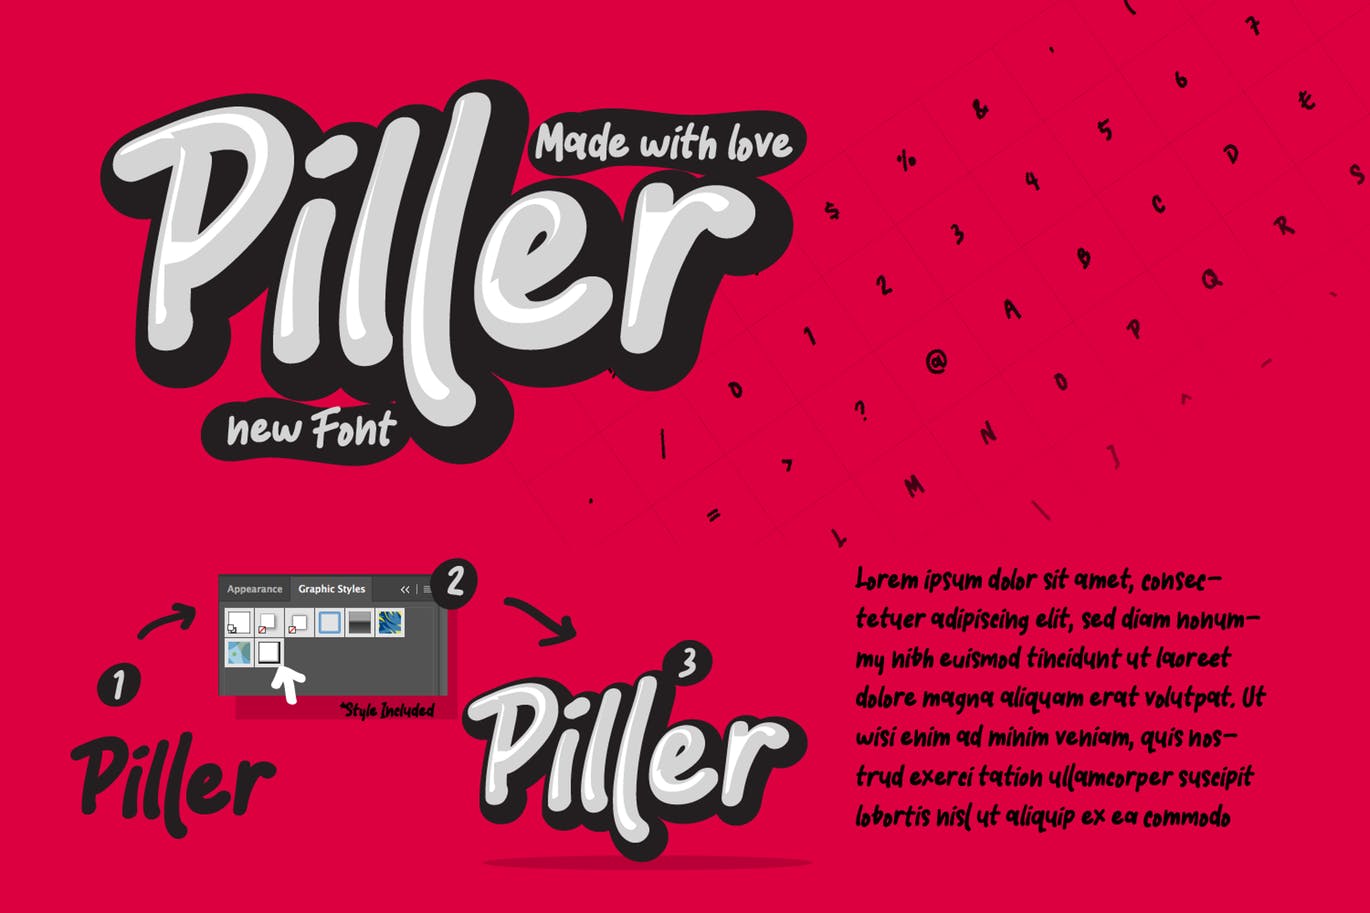 创意休闲时尚英文书法字体16图库精选 Piller the casual trendy font插图